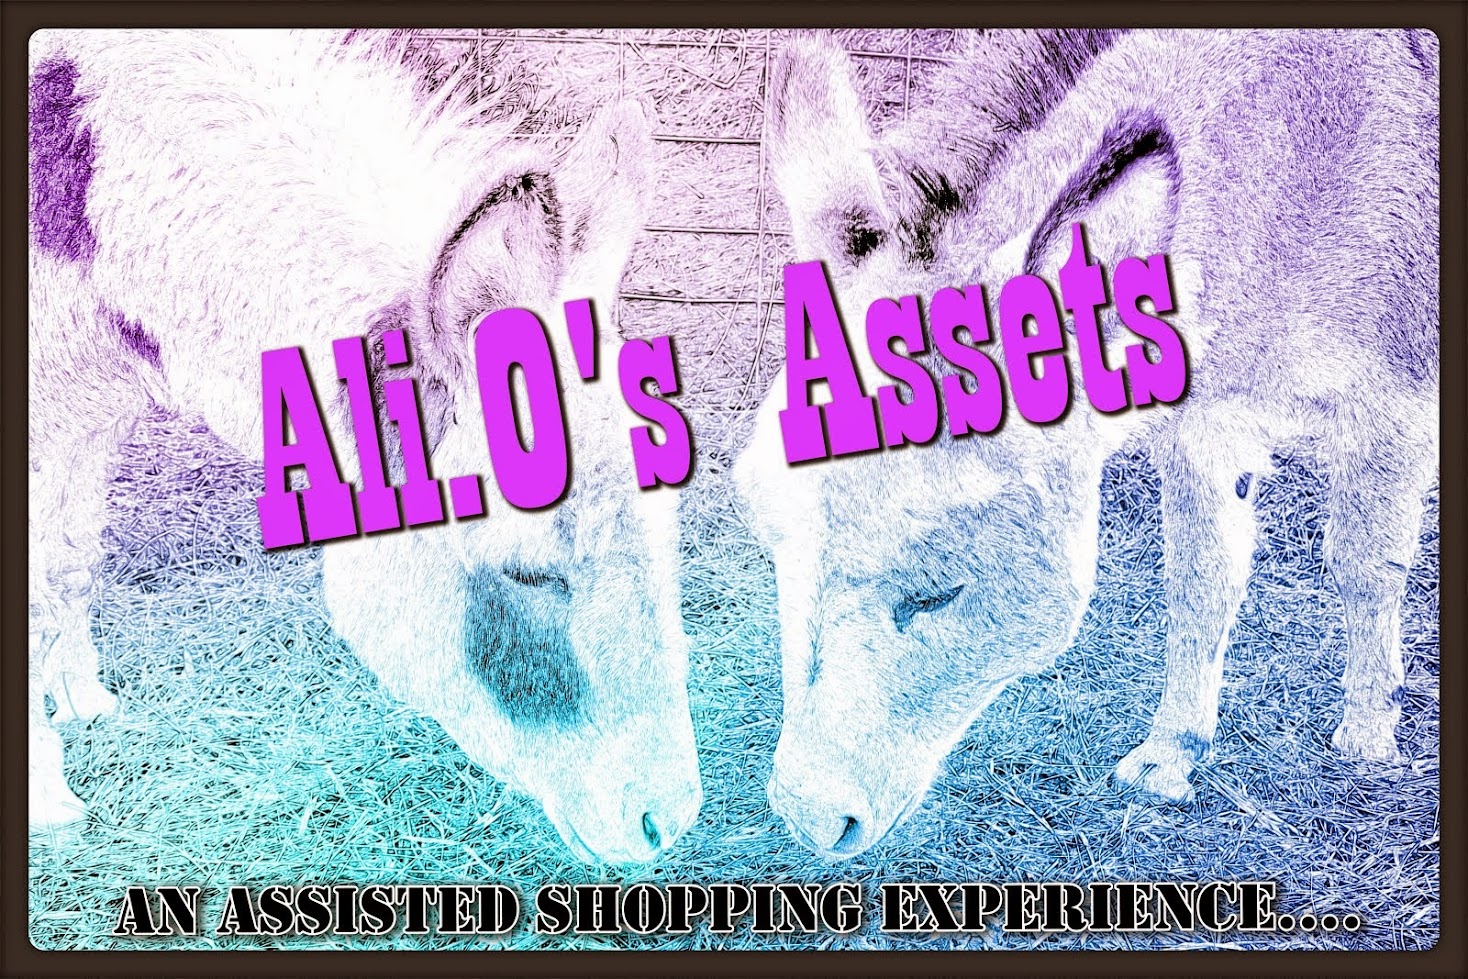 Ali.O's Assets